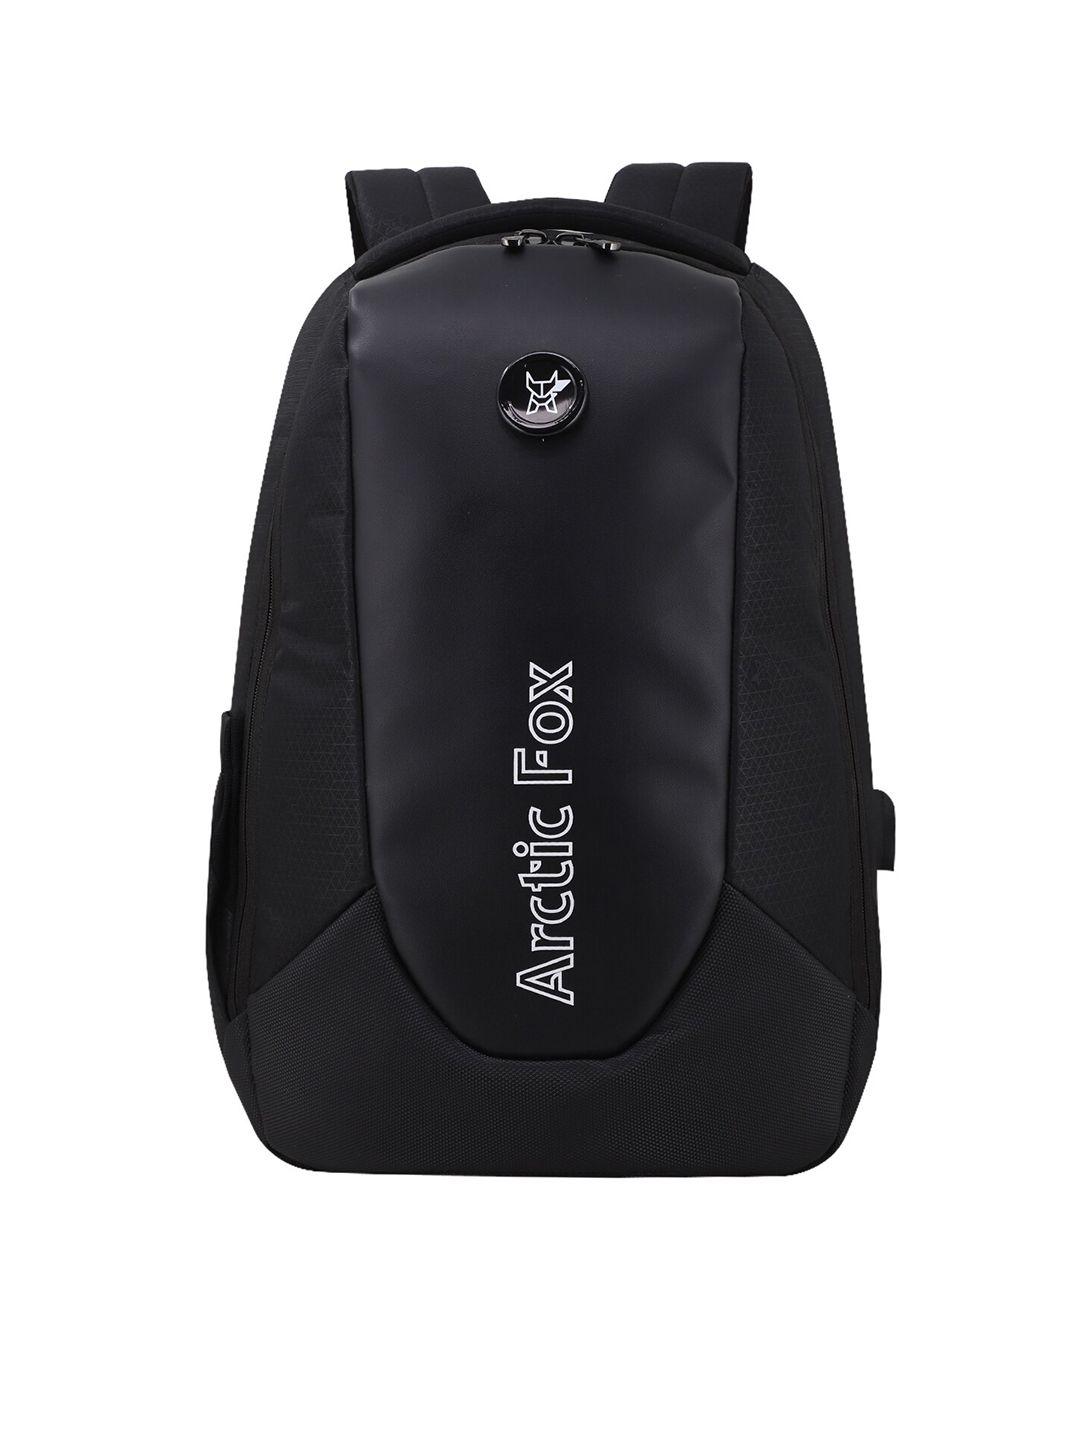 arctic fox unisex black laptop bag